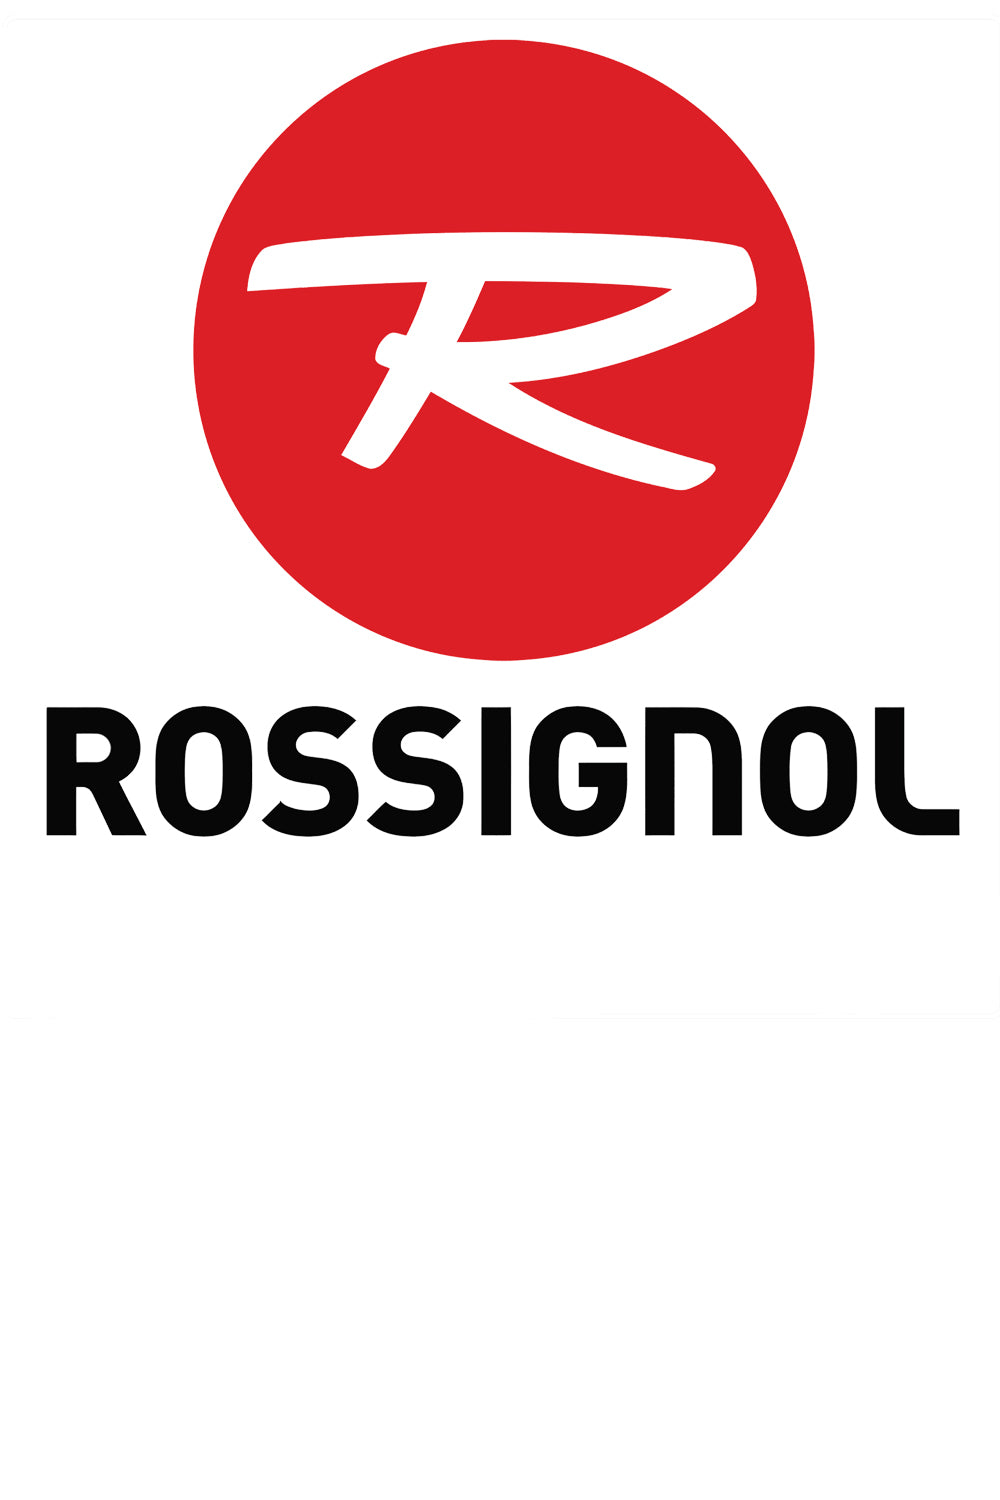 Rossignol – Ski Exchange